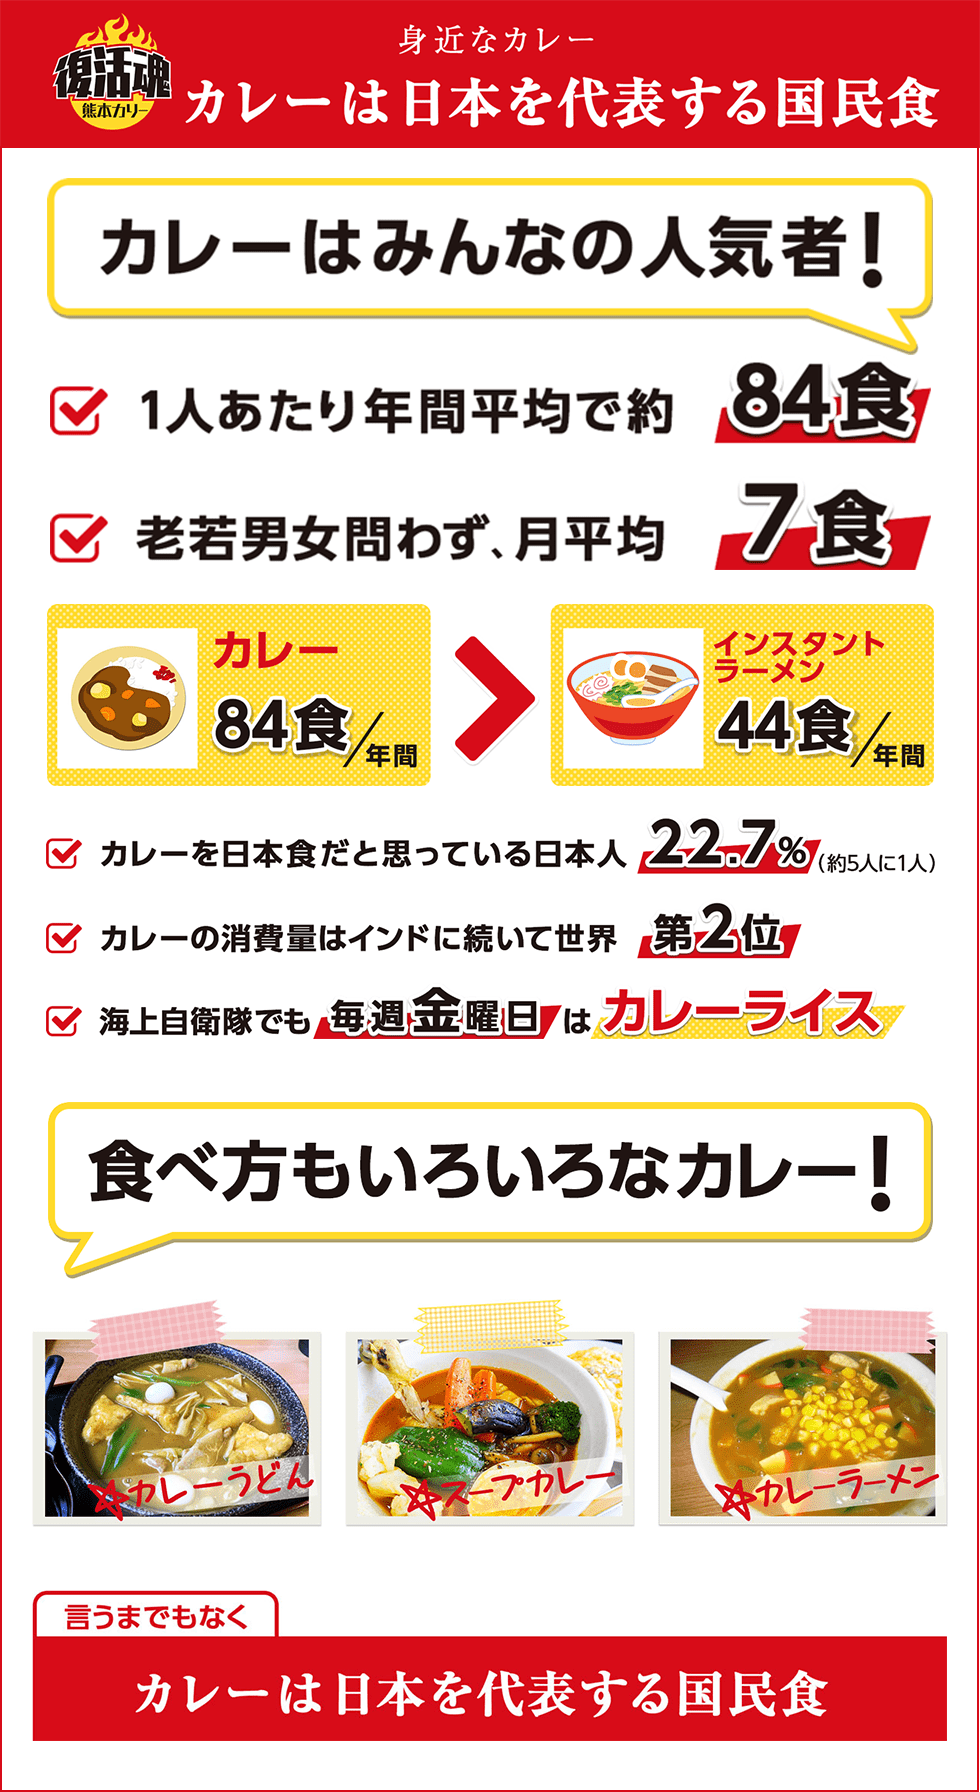 カレーは日本を代表する国民食